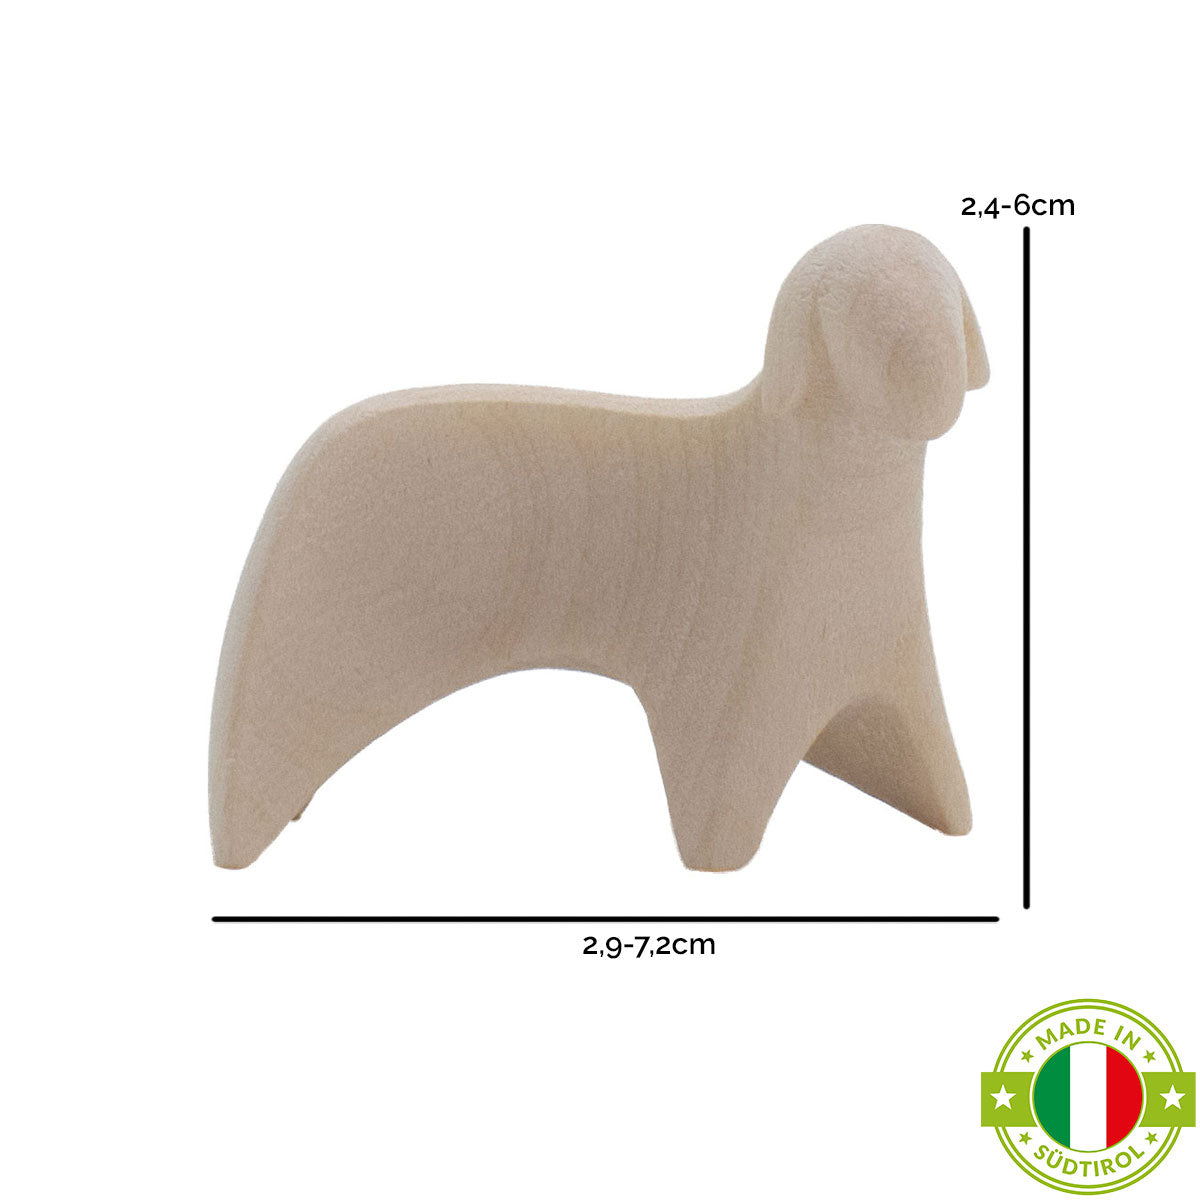 Krippenfigur ‘Schaf stehend rechts schauend’ | Ahorn natur | in verschiedenen Größen | Made in Südtirol